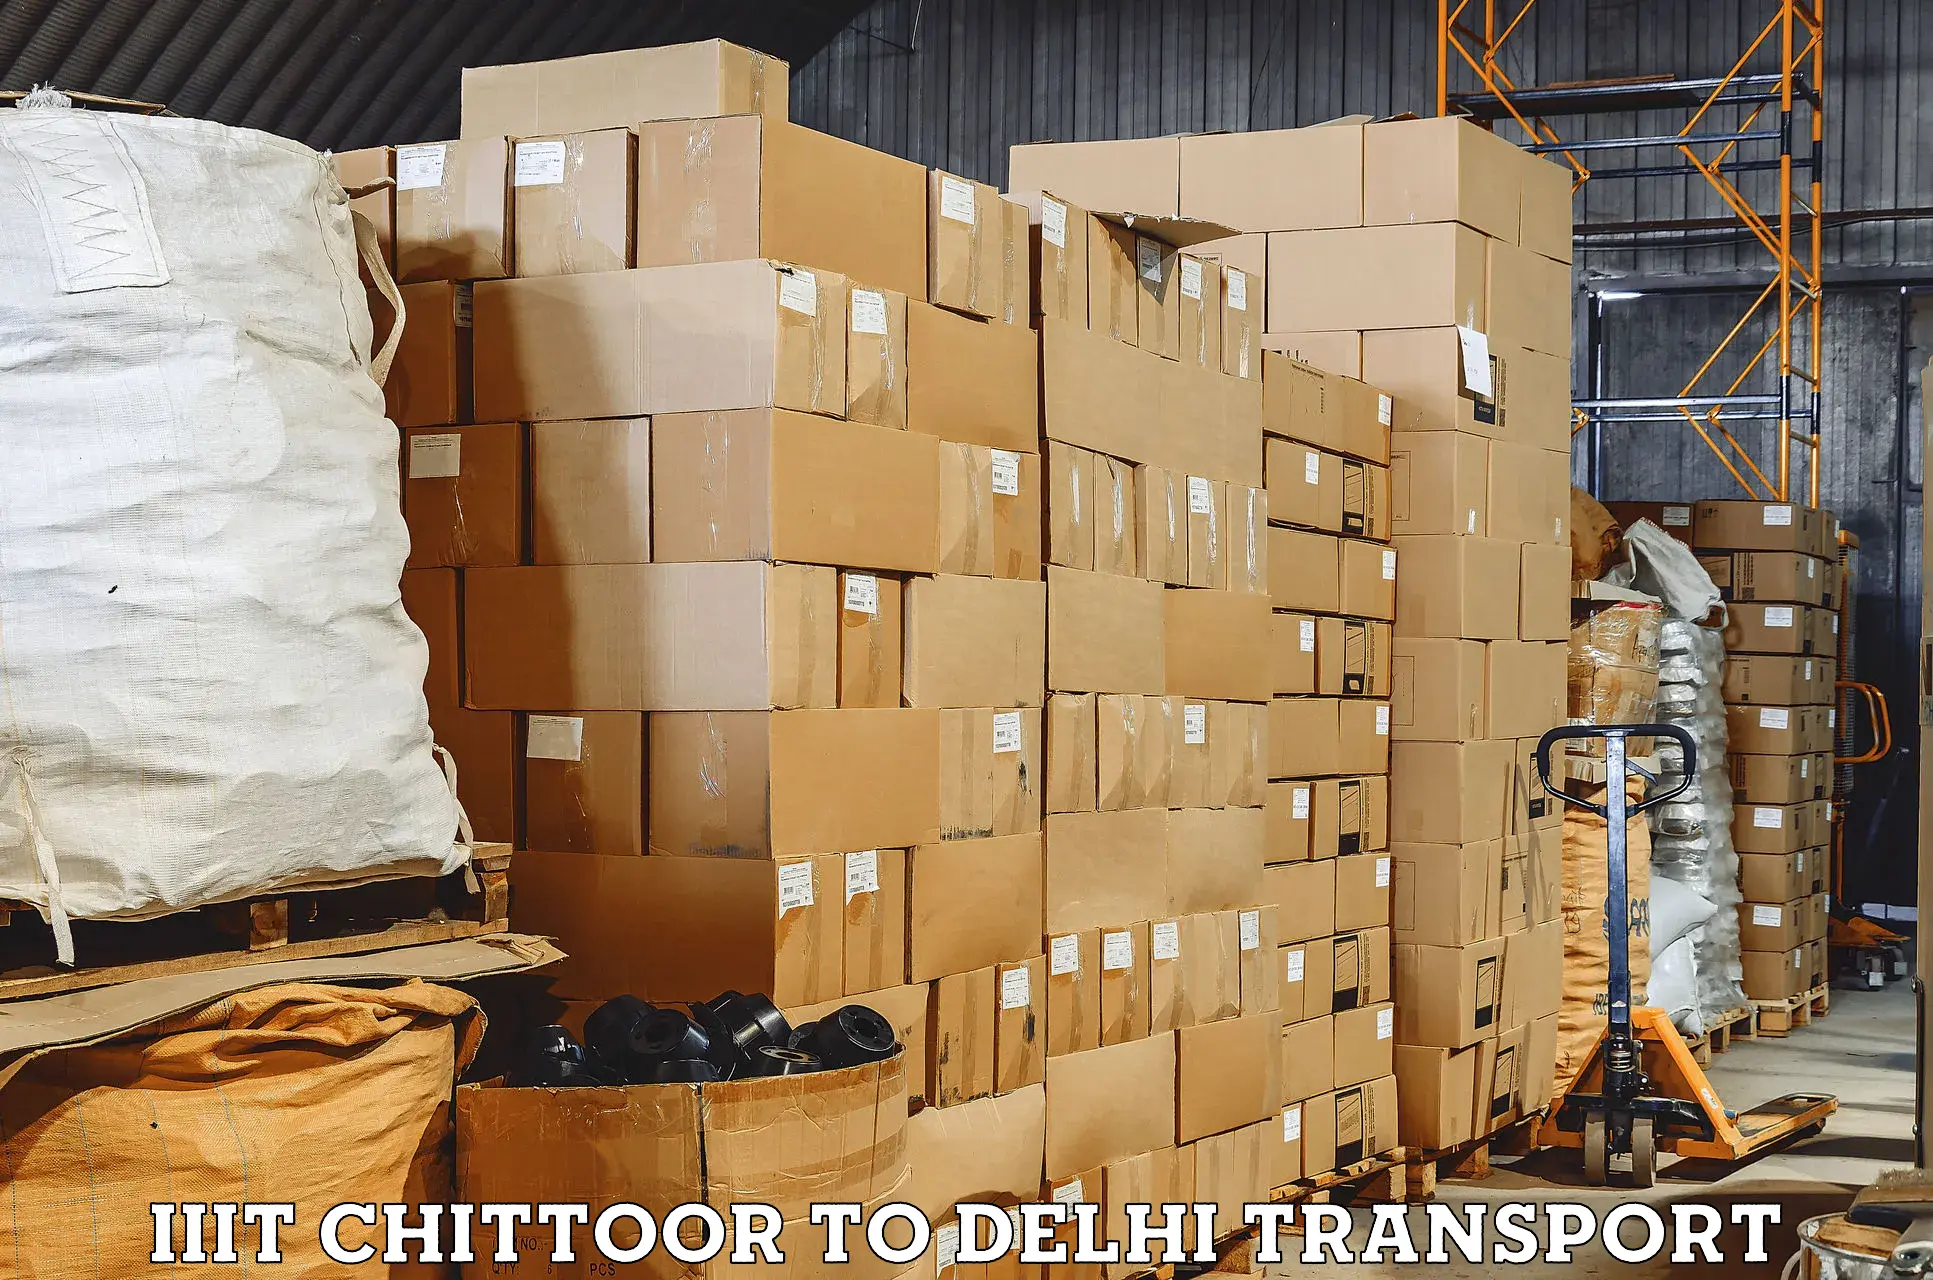 Inland transportation services IIIT Chittoor to Delhi